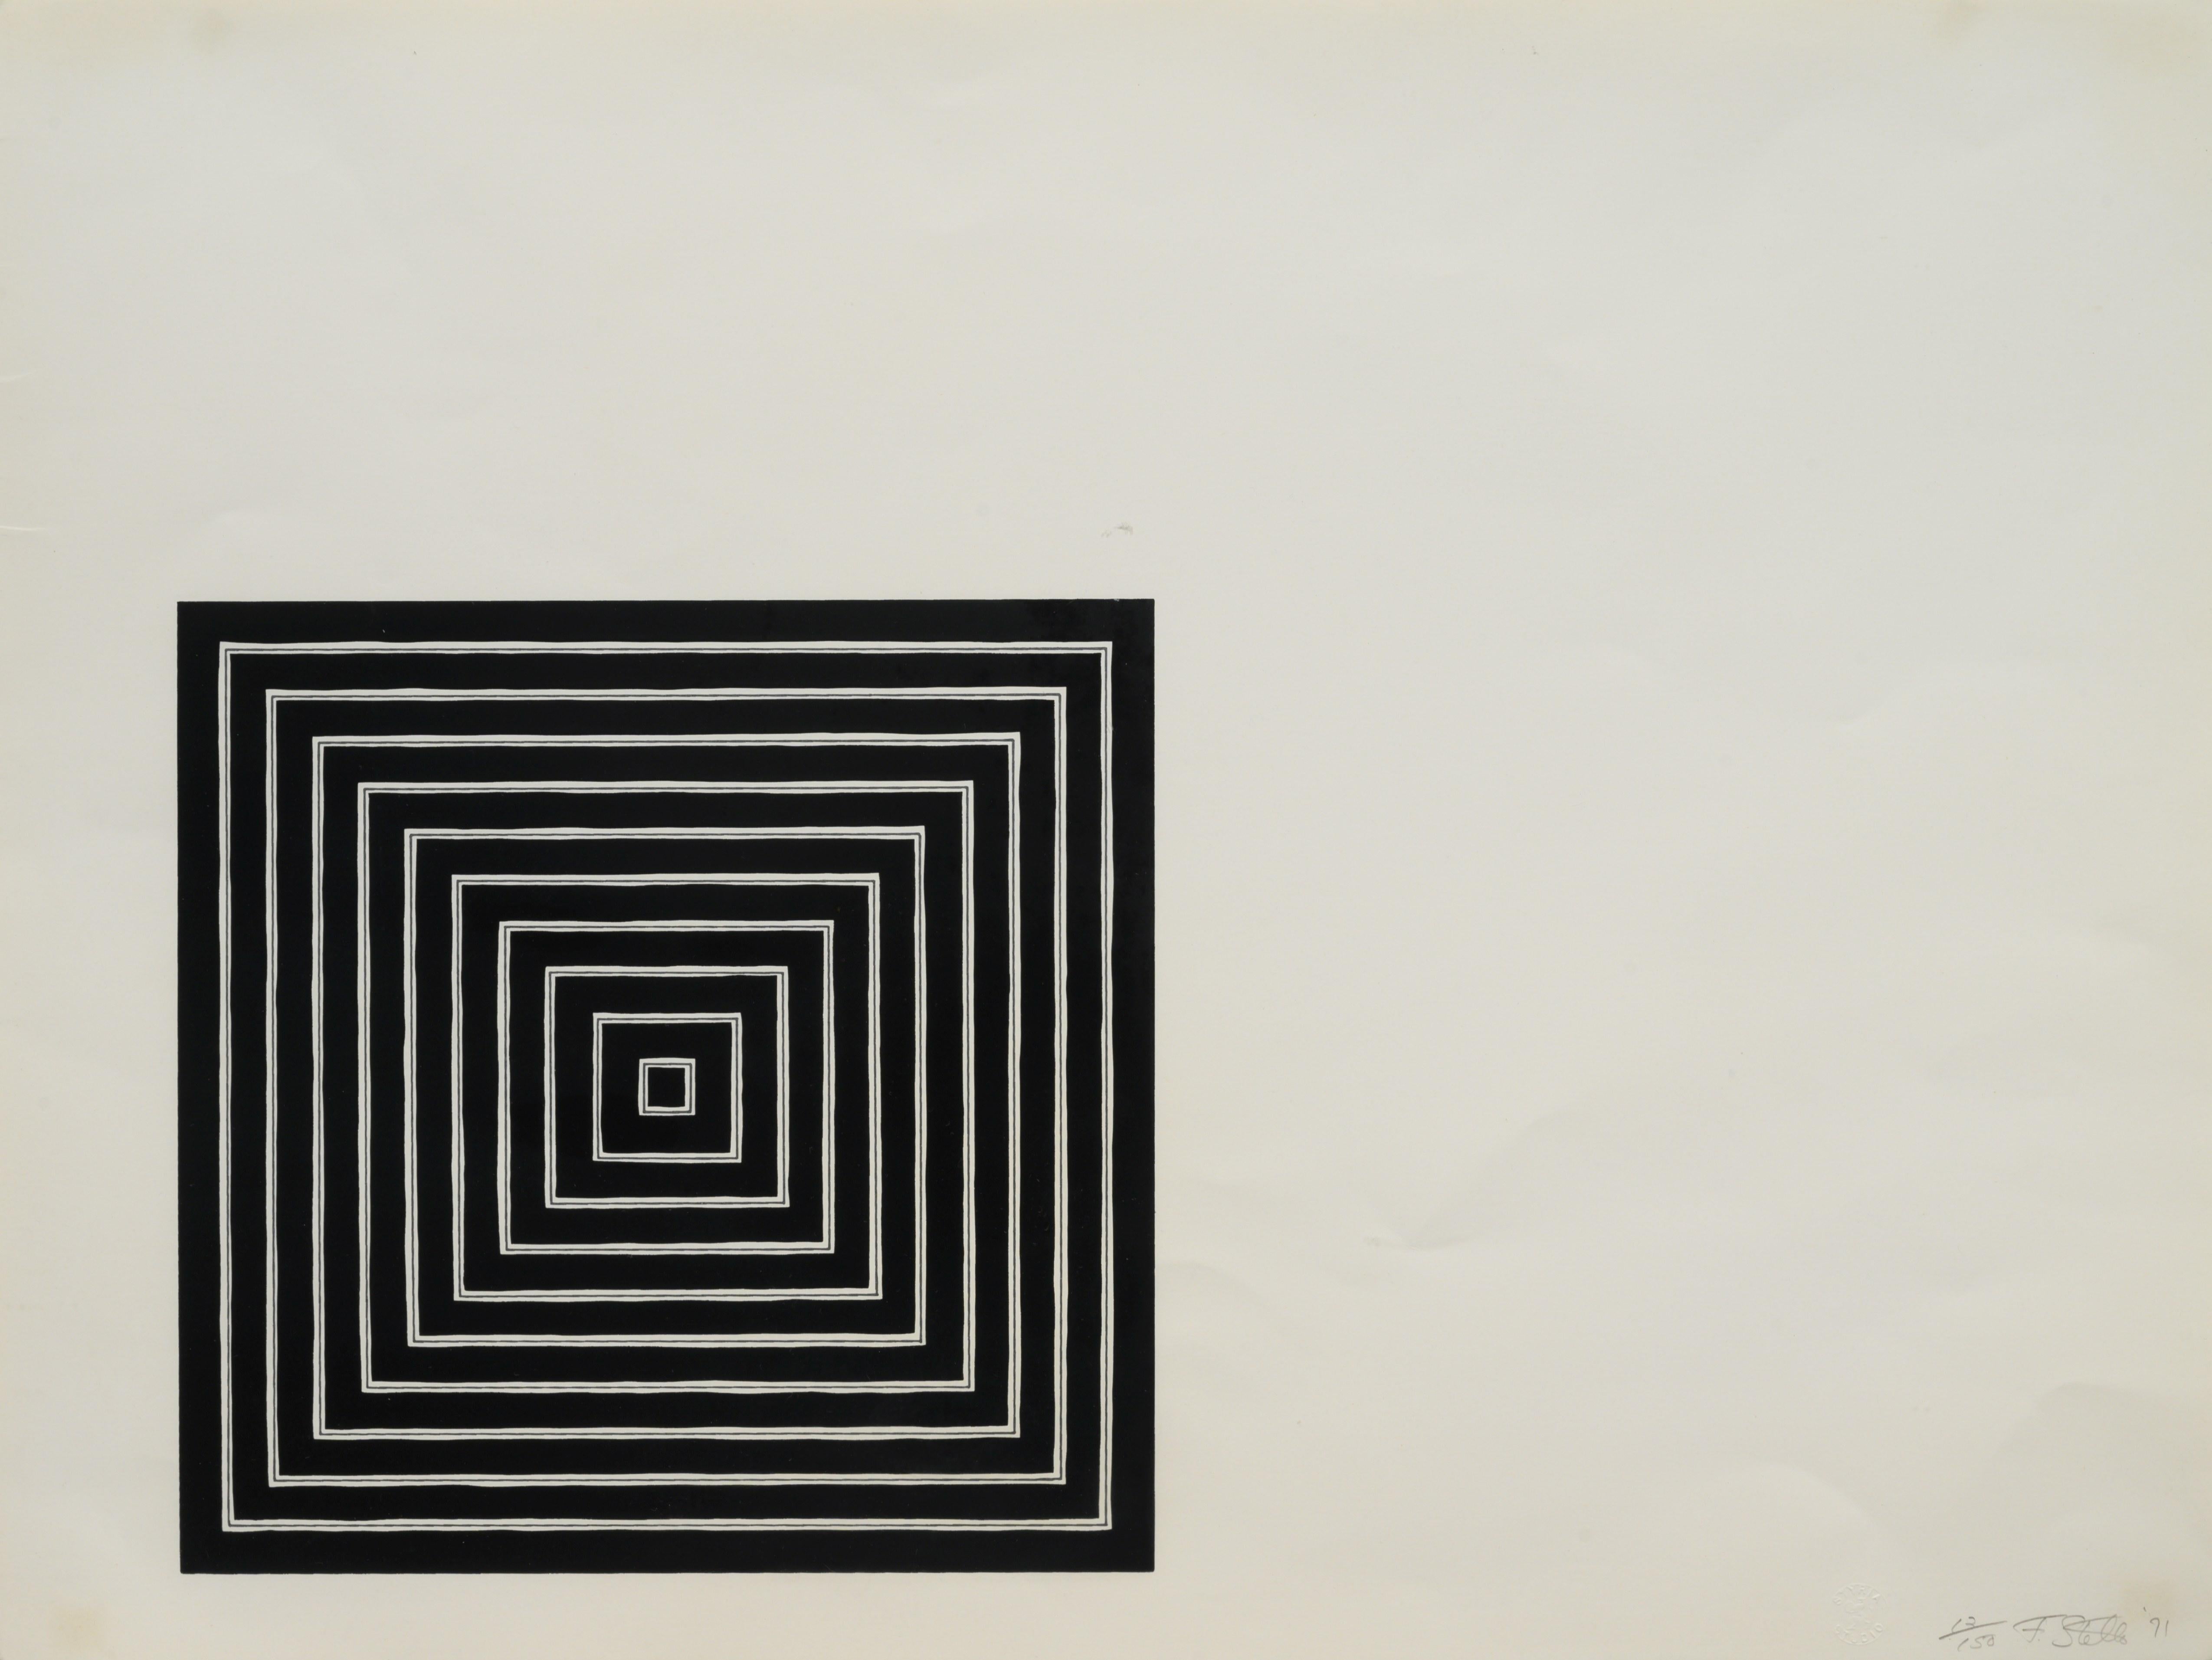 FRANK STELLA (1936-aujourd'hui)

Sérigraphie imprimée en noir et gris sur papier Fabriano, à pleine marge. Signé, daté et numéroté 13/150 au crayon, en bas à droite. Imprimé par Styria Studio, Inc, New York, avec le cachet à l'aveugle. Publié par